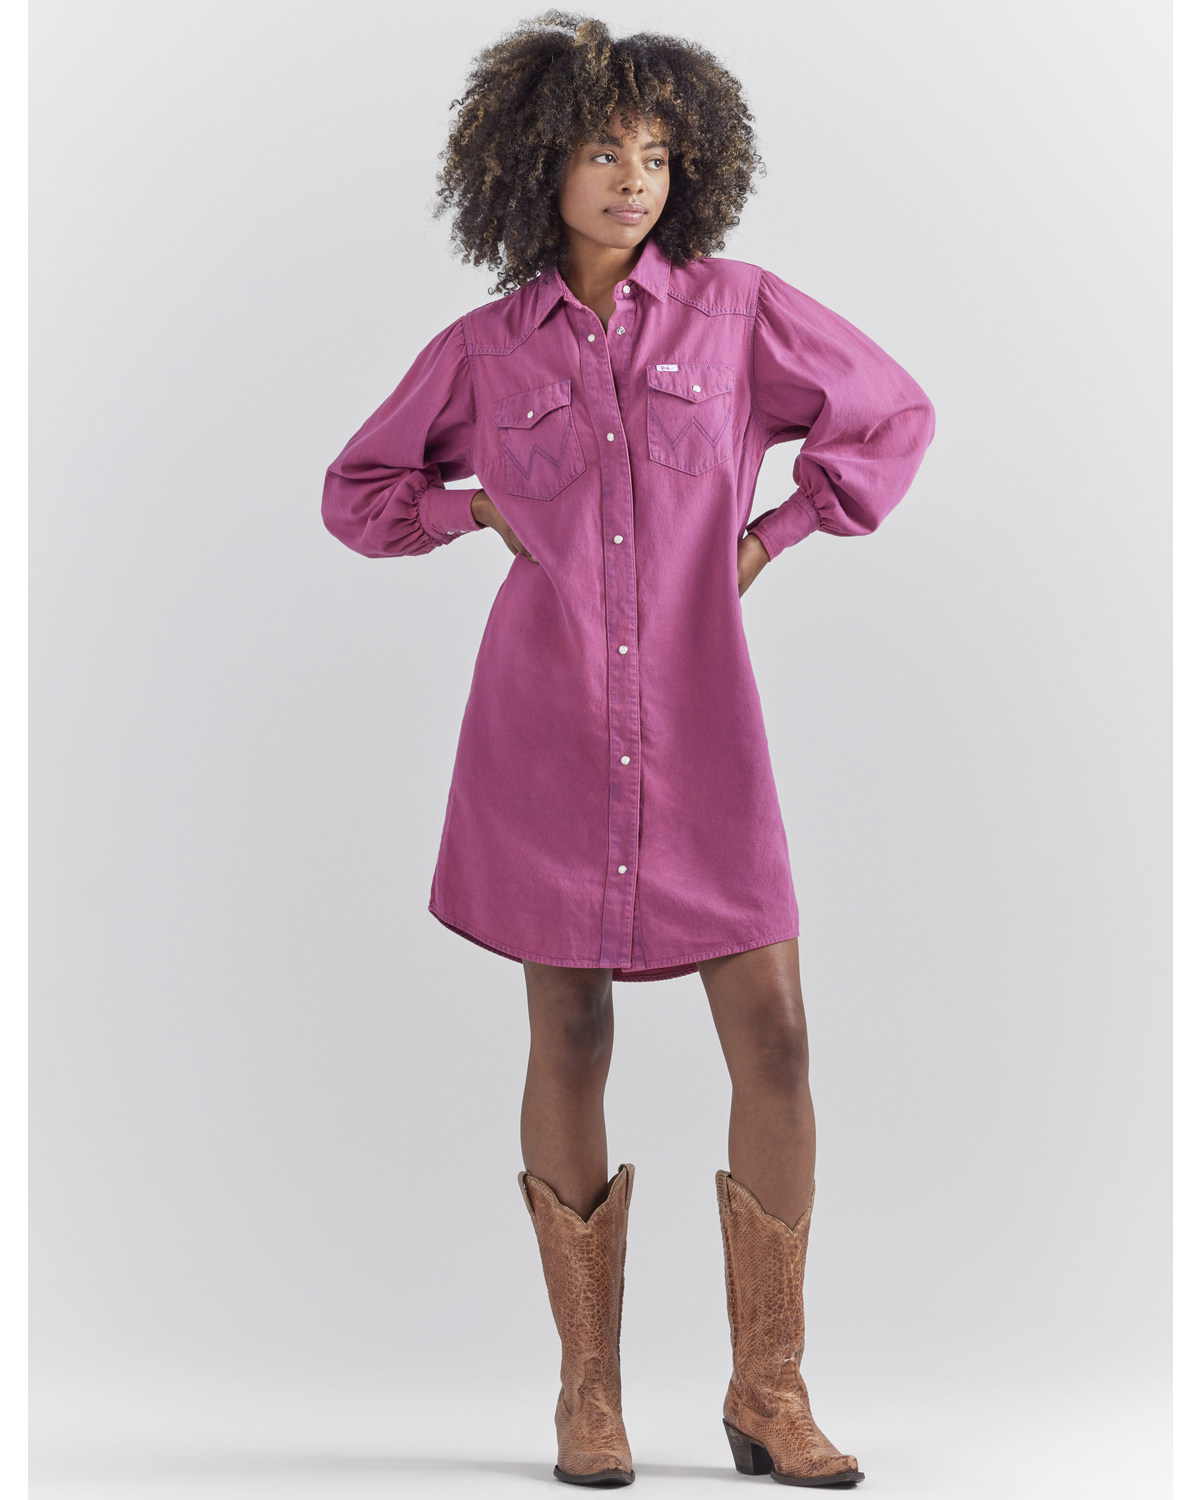 Wrangler® X Barbie™ Women's Dreamy Denim Western Shirt Dress